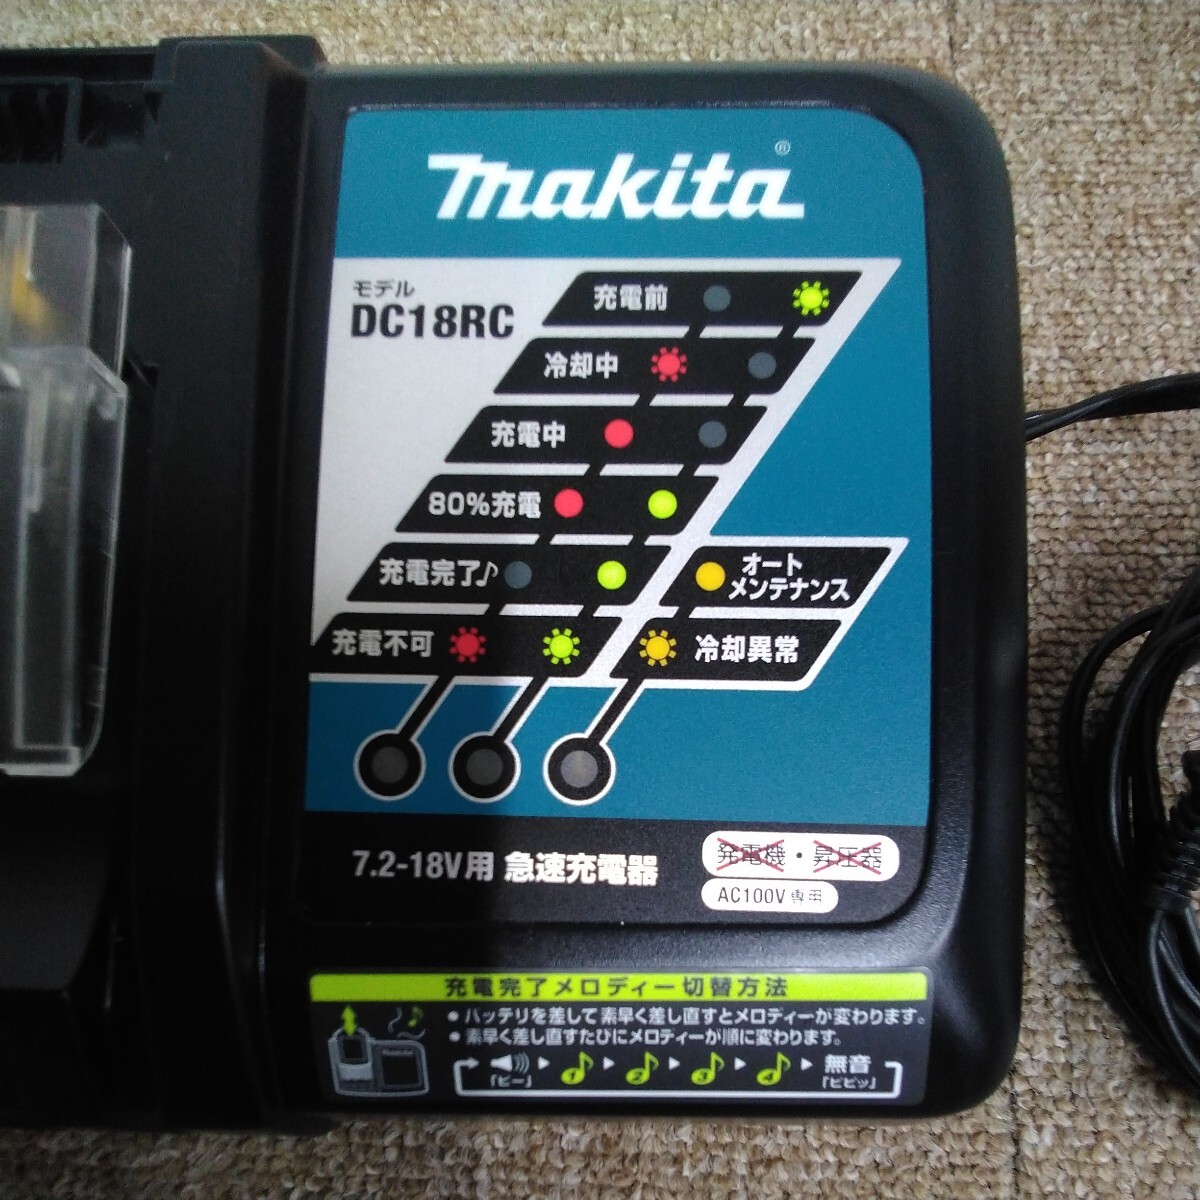 7829 送料520円 マキタ 急速充電器 DC18RC 充電器 makita マキタ充電器 電動工具ツール_画像3